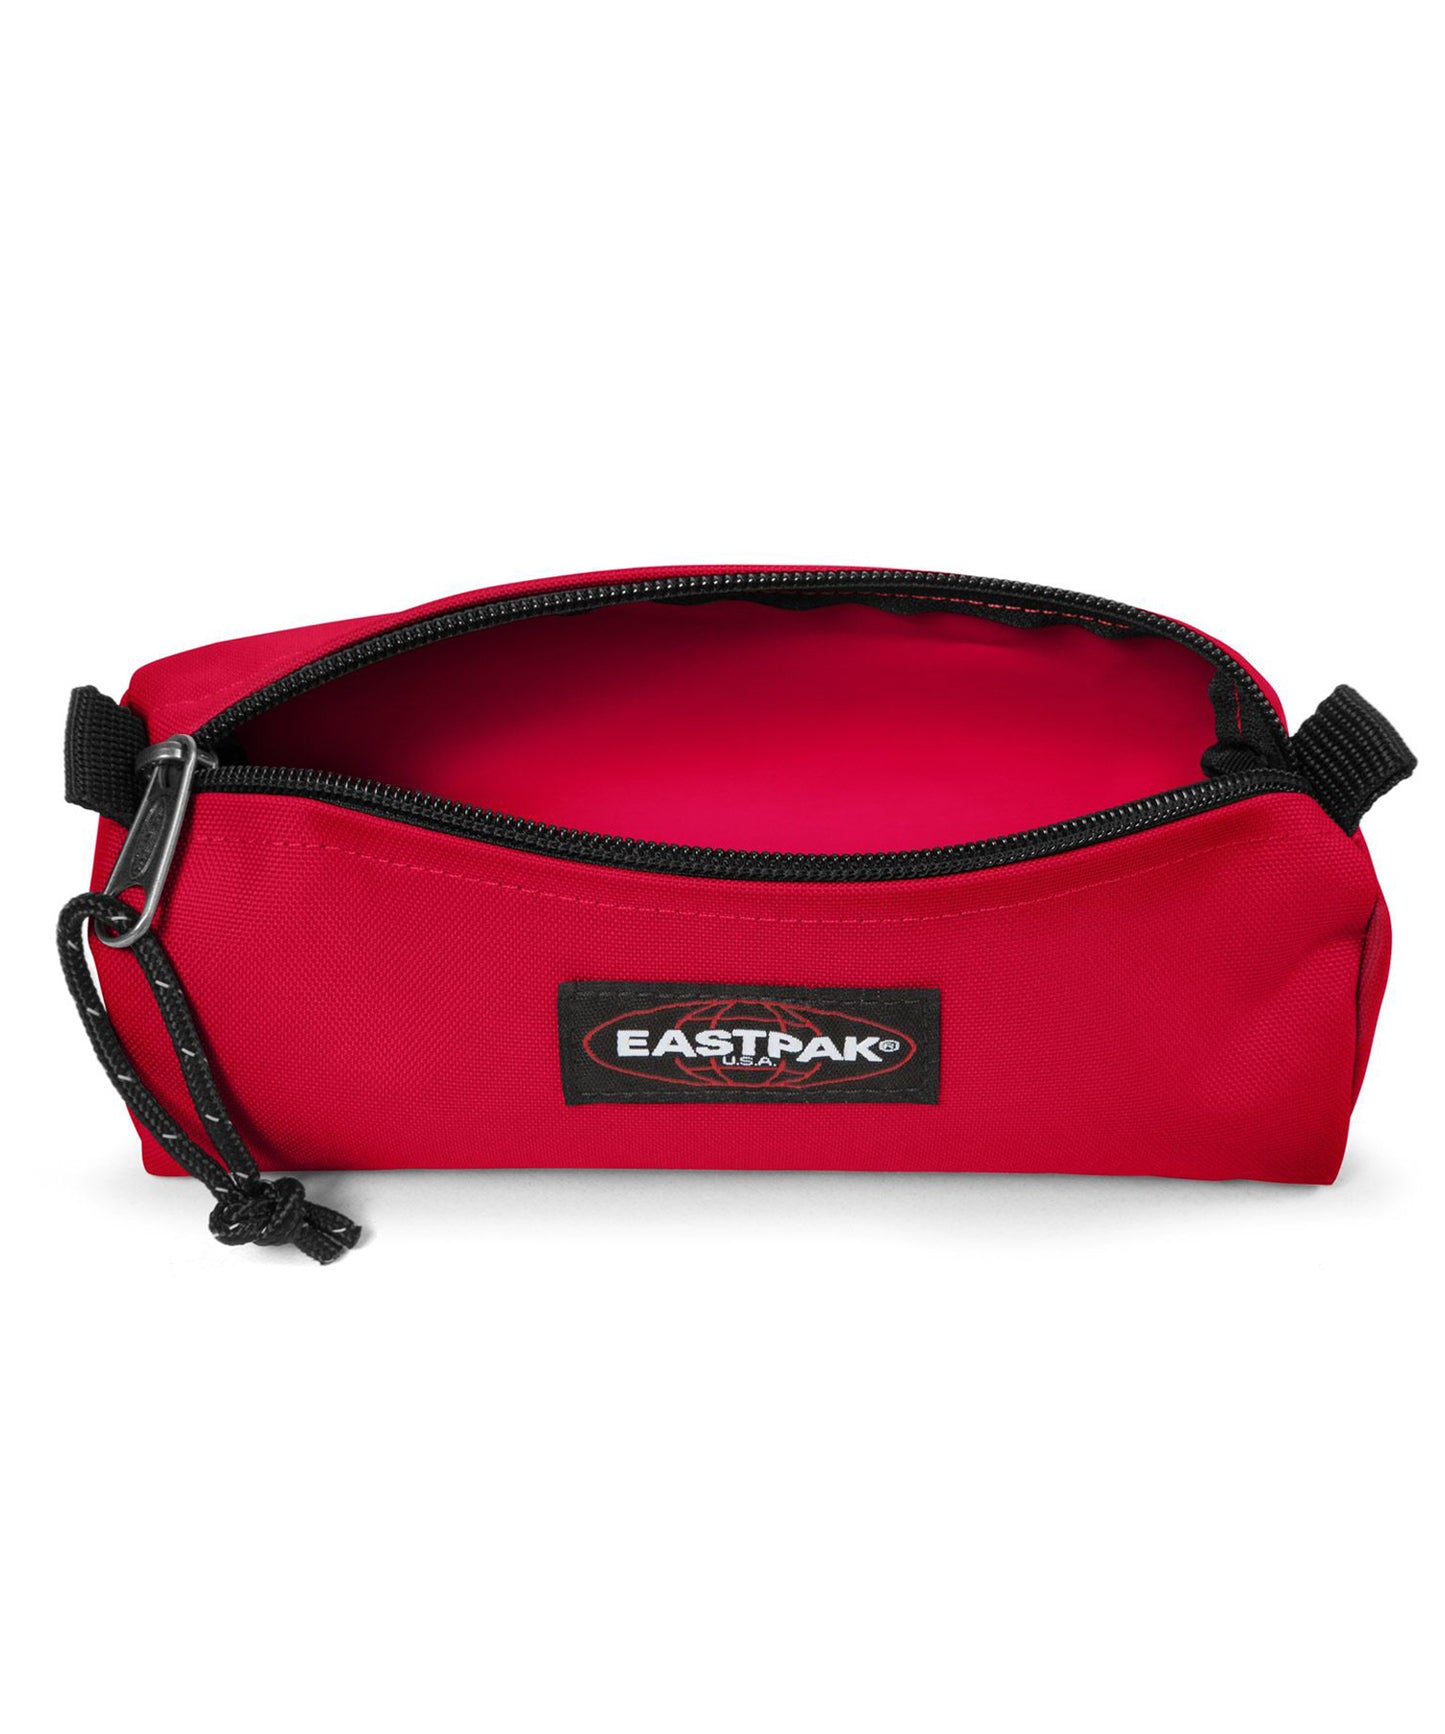 eastpak estuche benchmark de color-rojo-pirata claro, practico, sencillo, y duradero, cierre con cremallera.